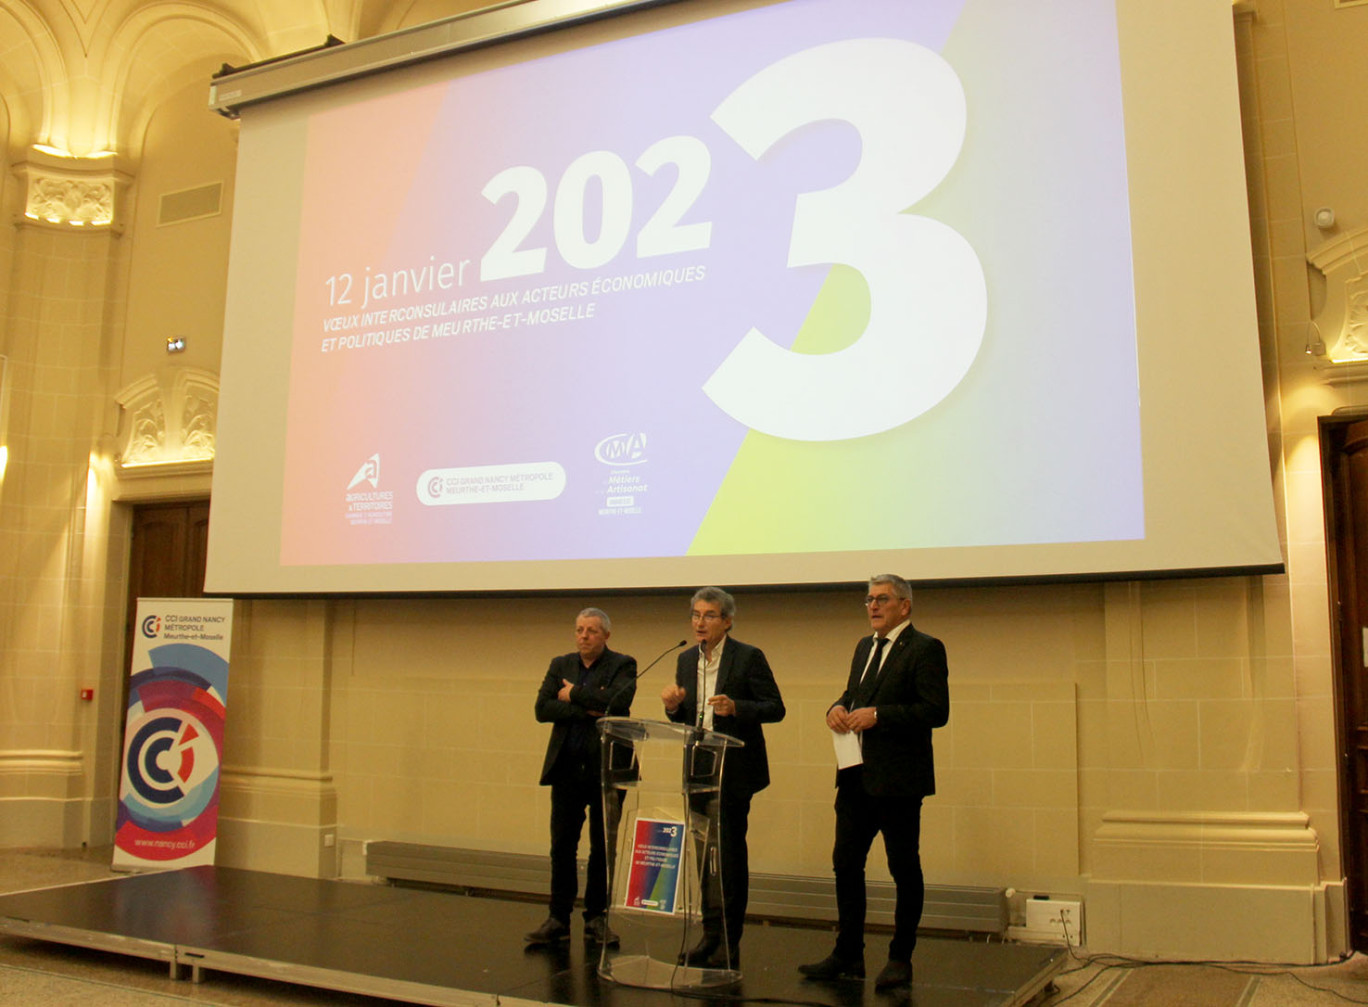 Les trois présidents des chambres consulaires de Meurthe-et-Moselle ont présenté leurs vœux aux acteurs économiques et politiques le 12 janvier à Nancy.